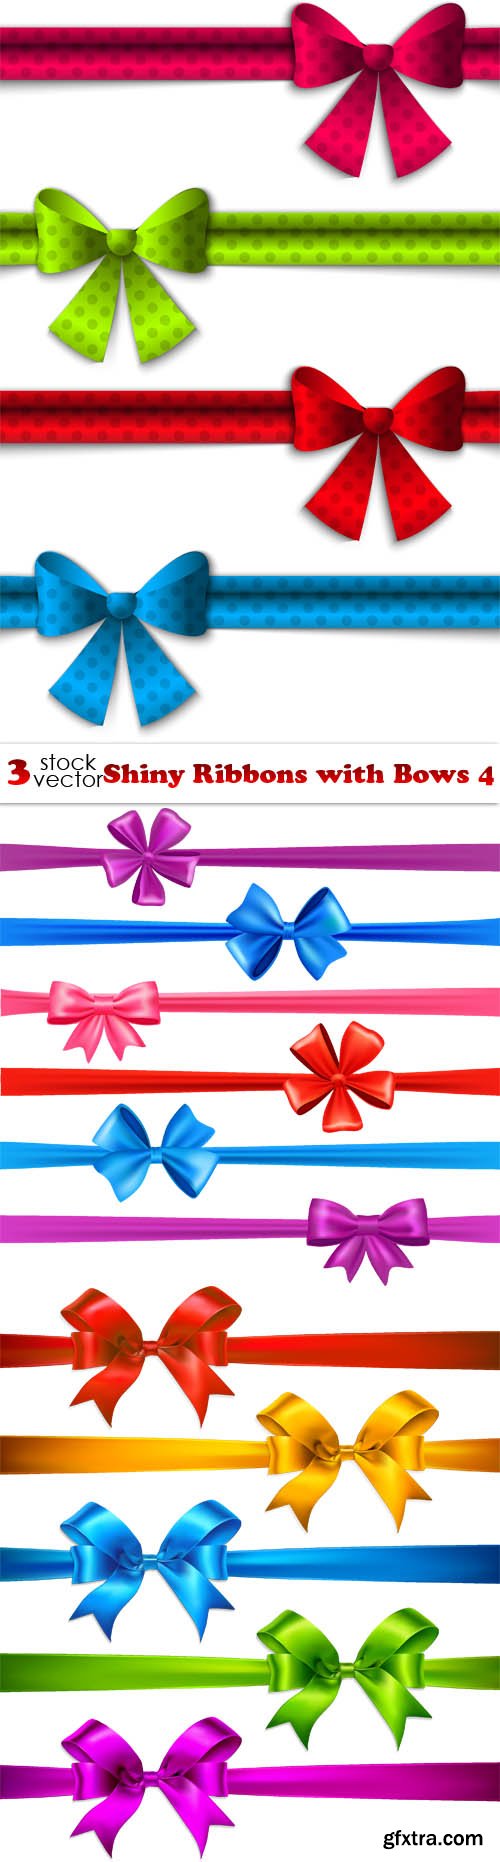 Vectors - Shiny Ribbons with Bows 4